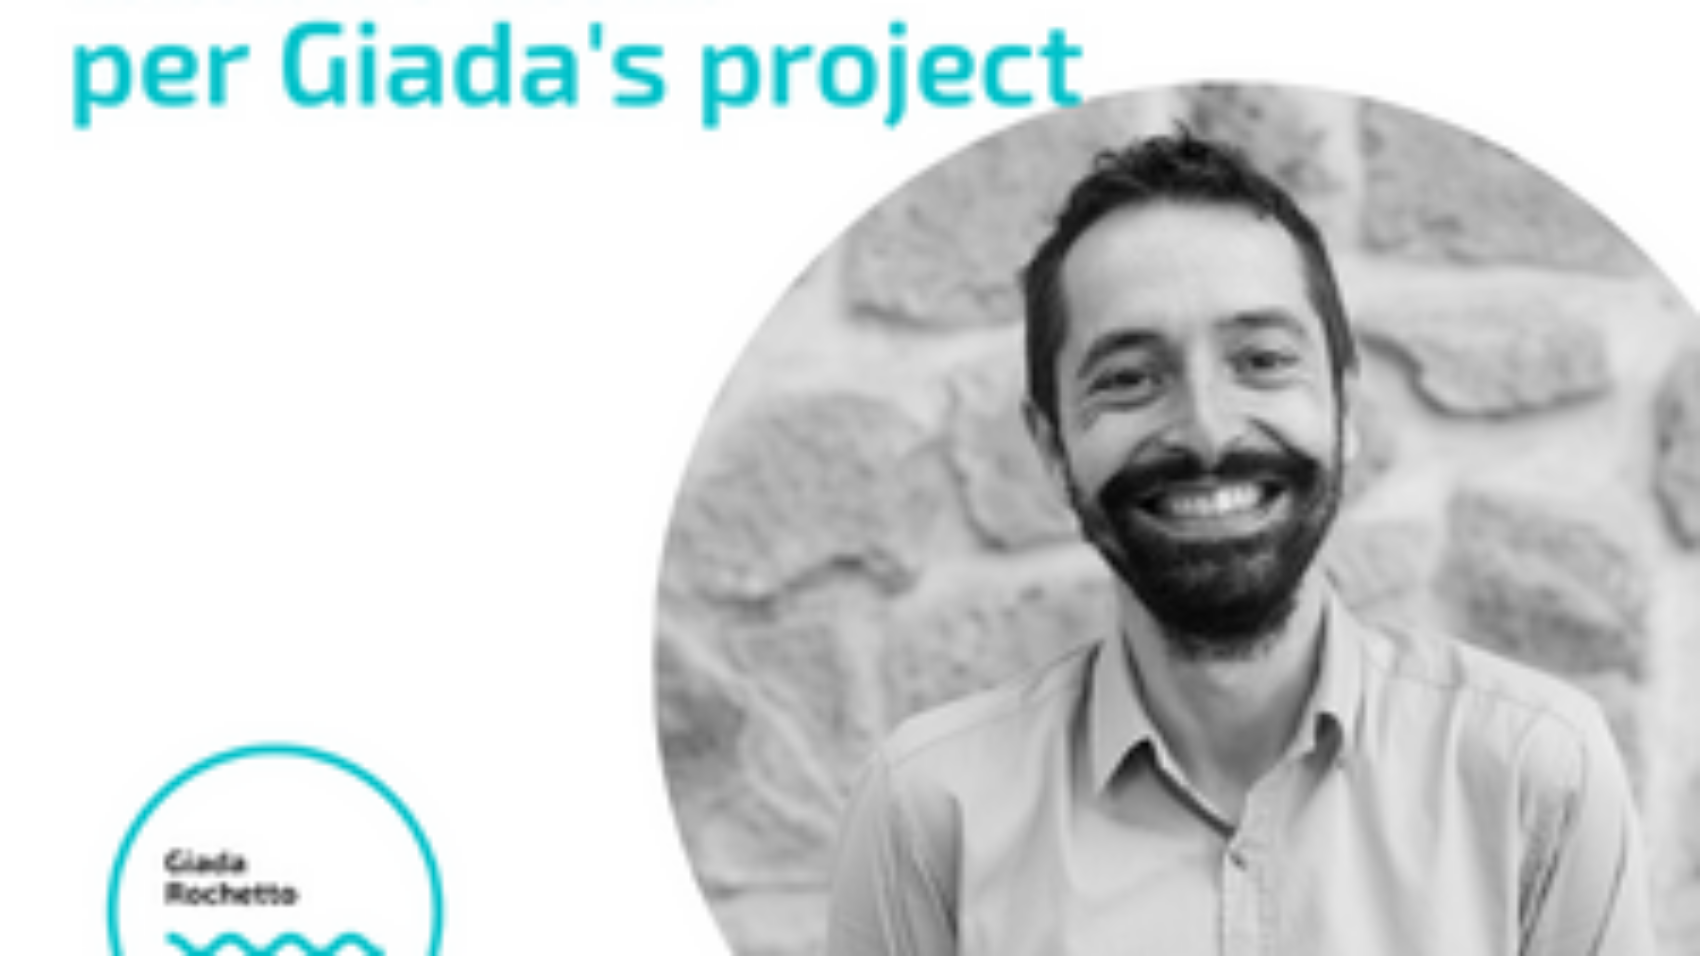 Guido Penta, IT Recruiter Adecco per Giada's Project